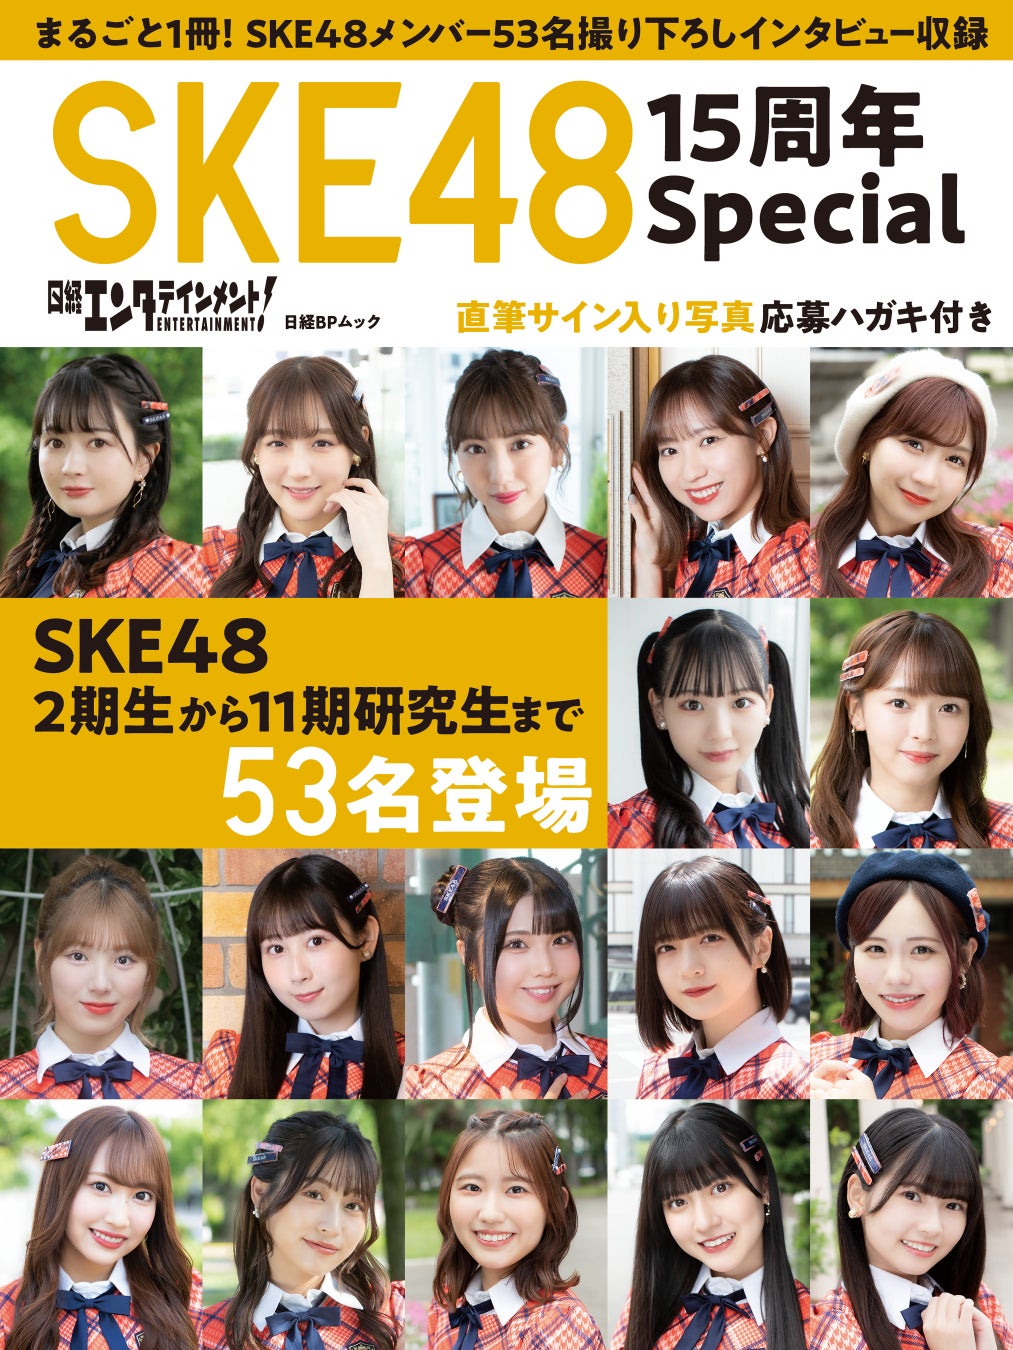 SKE48・計53名のメンバーが登場する『日経エンタテインメント! SKE48 15周年Special』が発売のサブ画像1